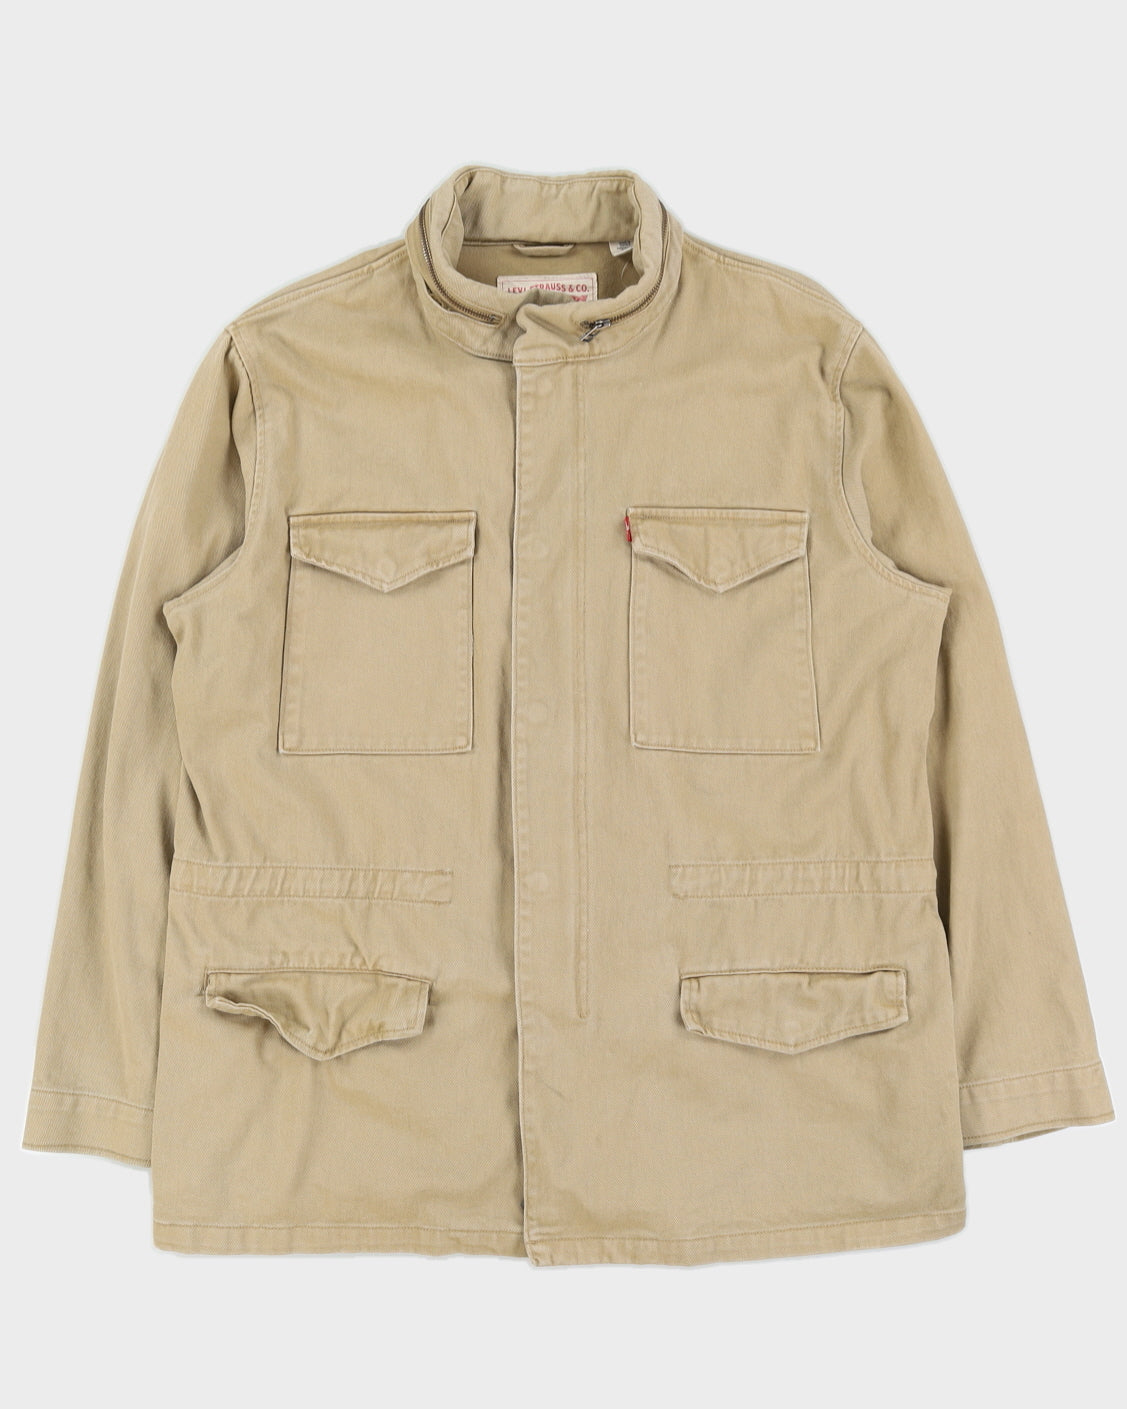 Levi's Beige Workwear Jacket - XXL